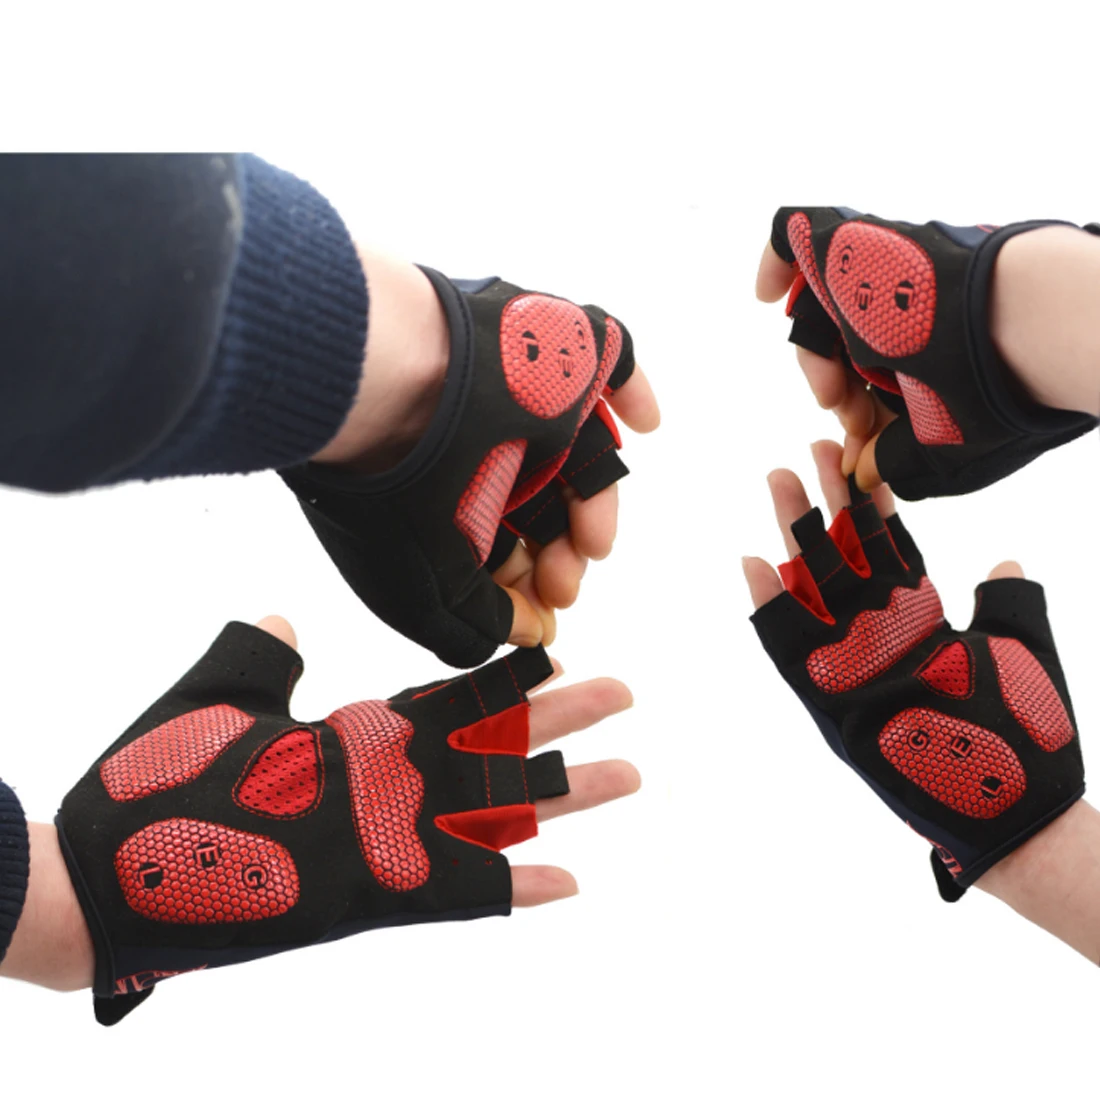 Iguardor высококачественные перчатки для горного велосипеда с половинными пальцами, велосипедные наружные ударостойкие перчатки по оптовой цене-Красный L